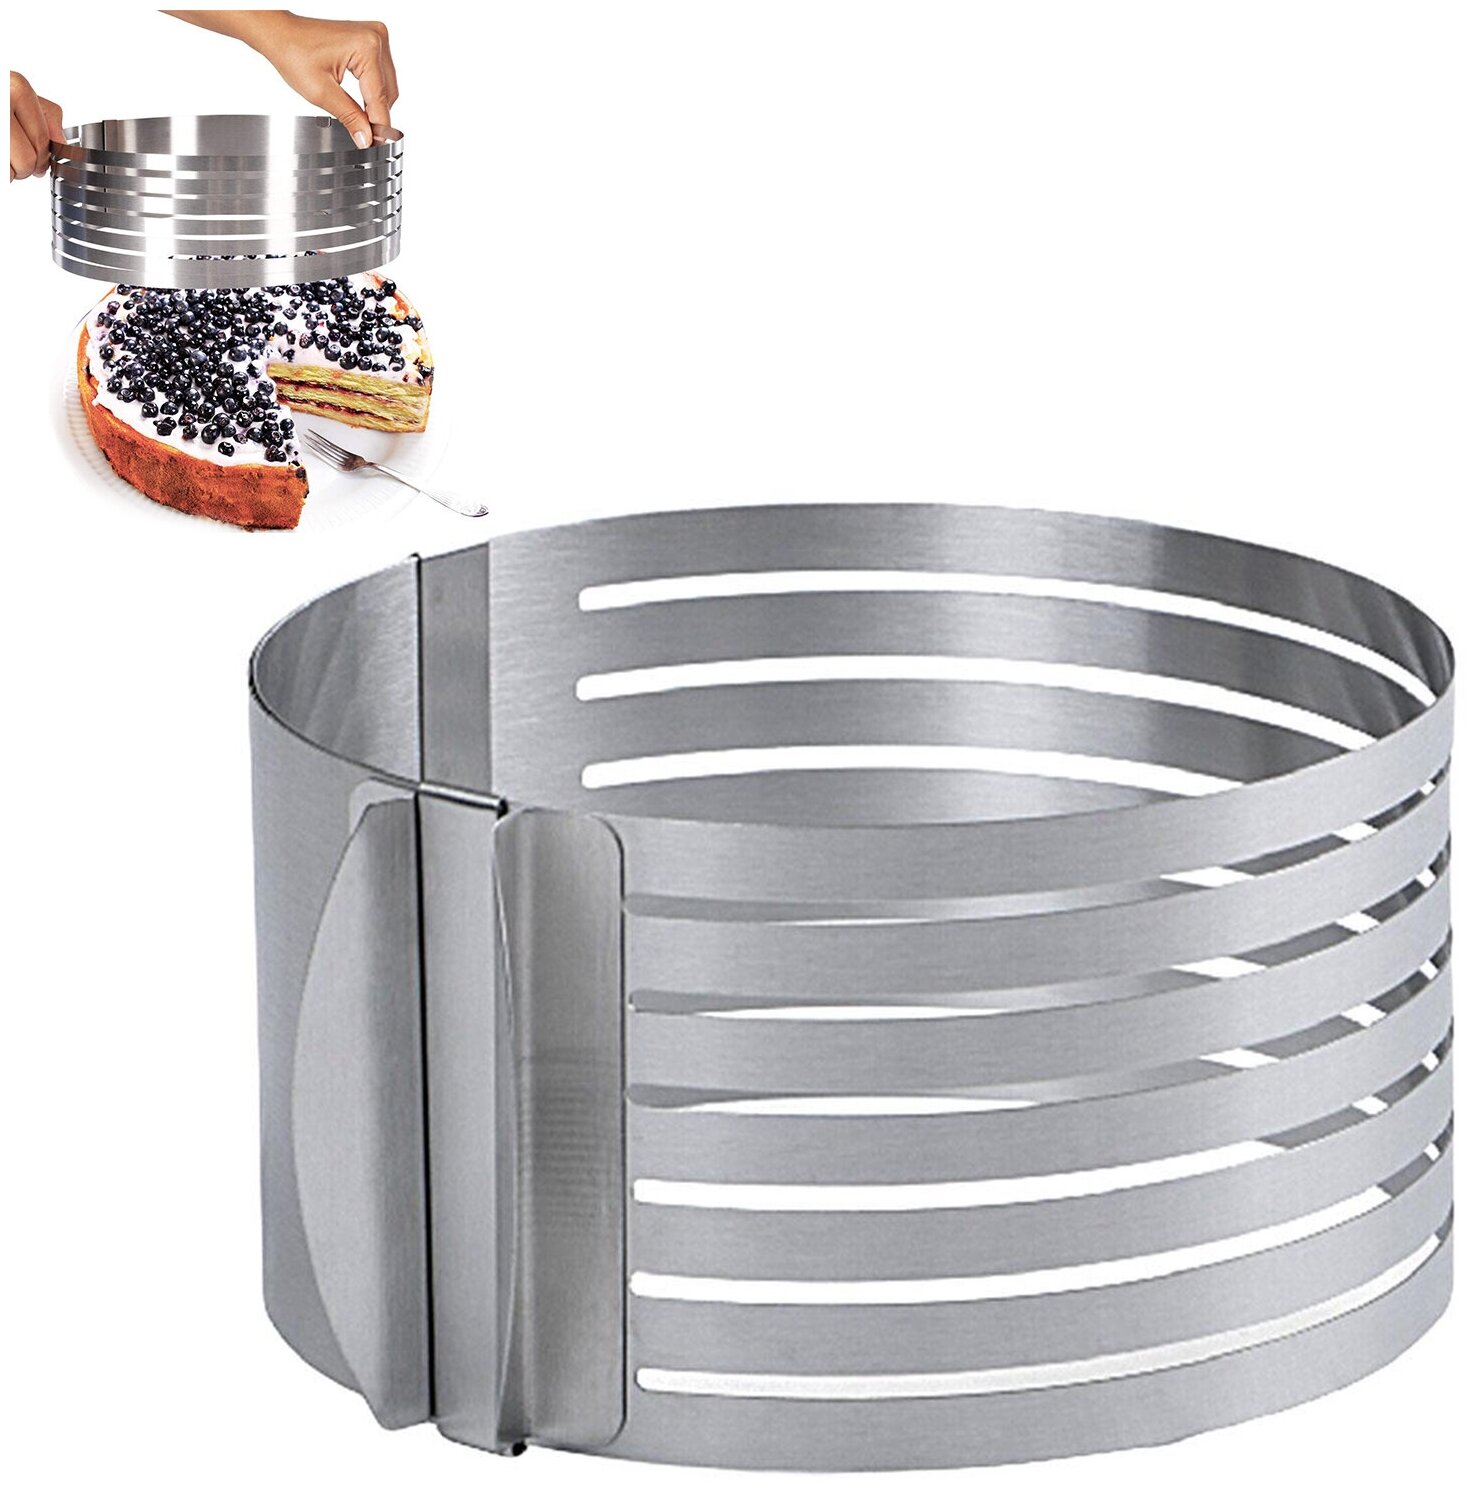 Форма слайсер SimpleShop для нарезки коржей форма для выпечки круглая с прорезью кулинарное разъемное кольцо 15-20 см высота 85 см сталь